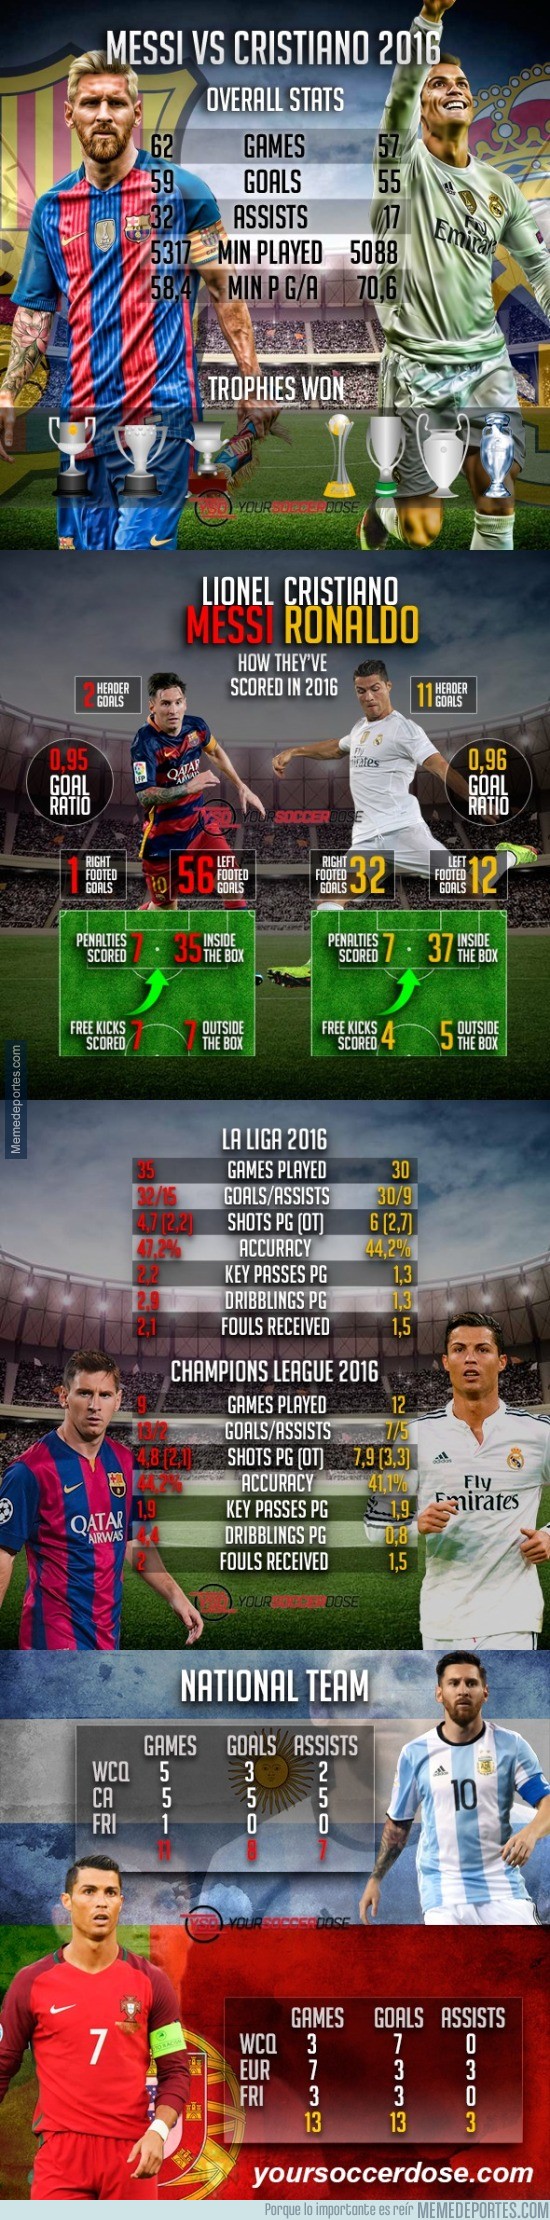 935205 - Messi vs Cristiano. Estadísticas completas 2016